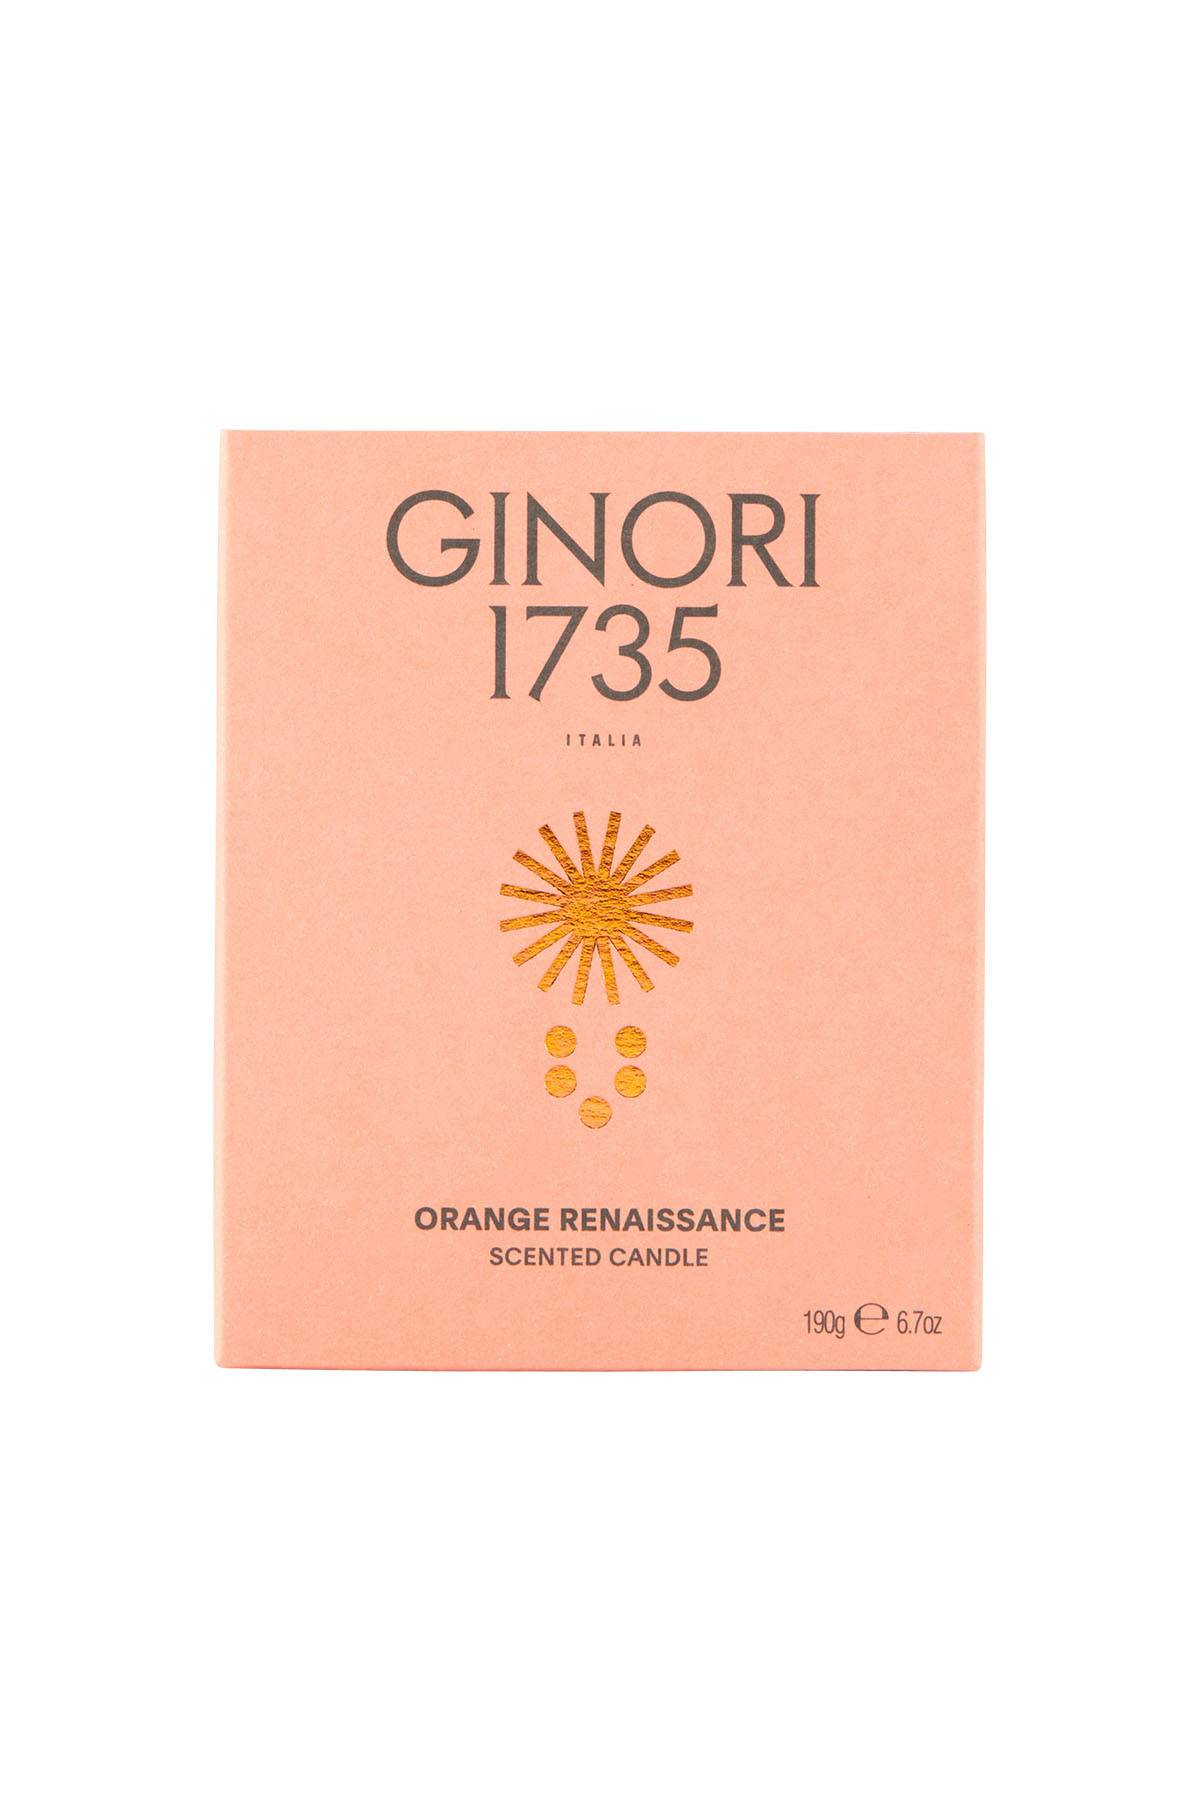 GINORI 1735 orange renaissance scented candle refill for il seguace 190 gr